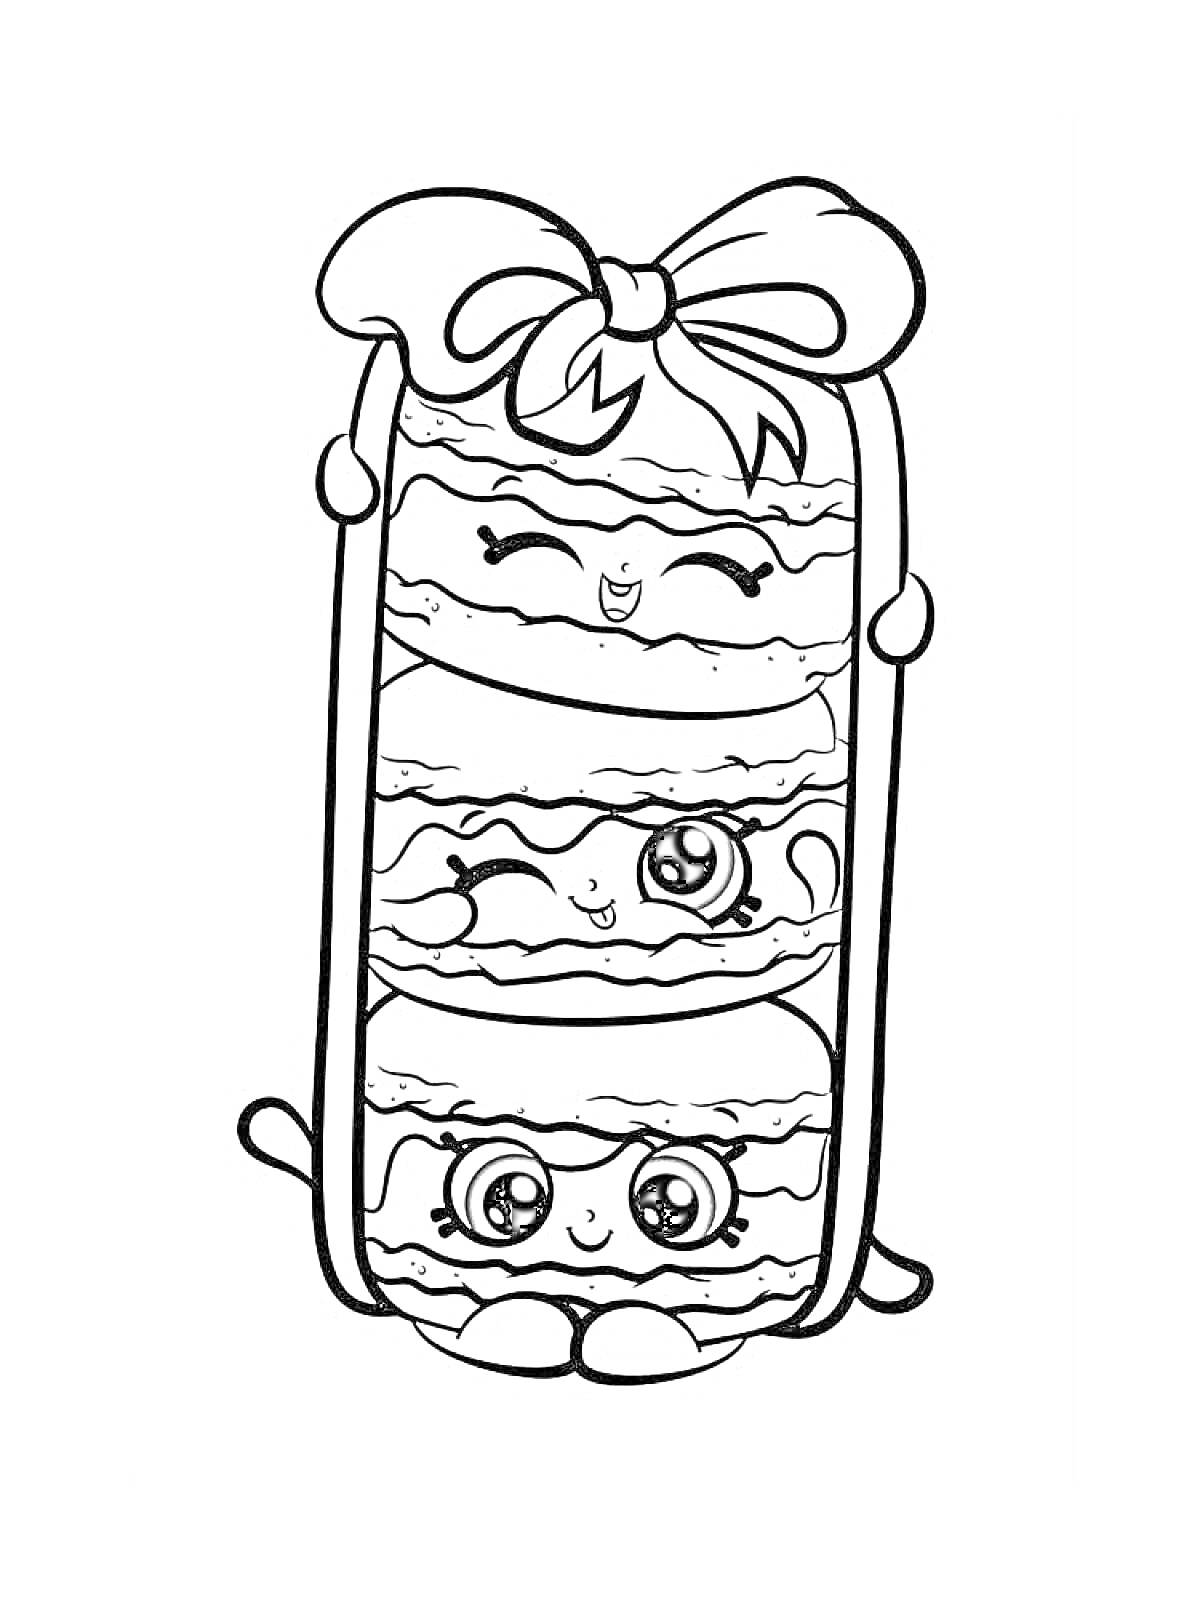 Раскраска Ласковый пирог с тремя улыбающимися лицами и бантиком